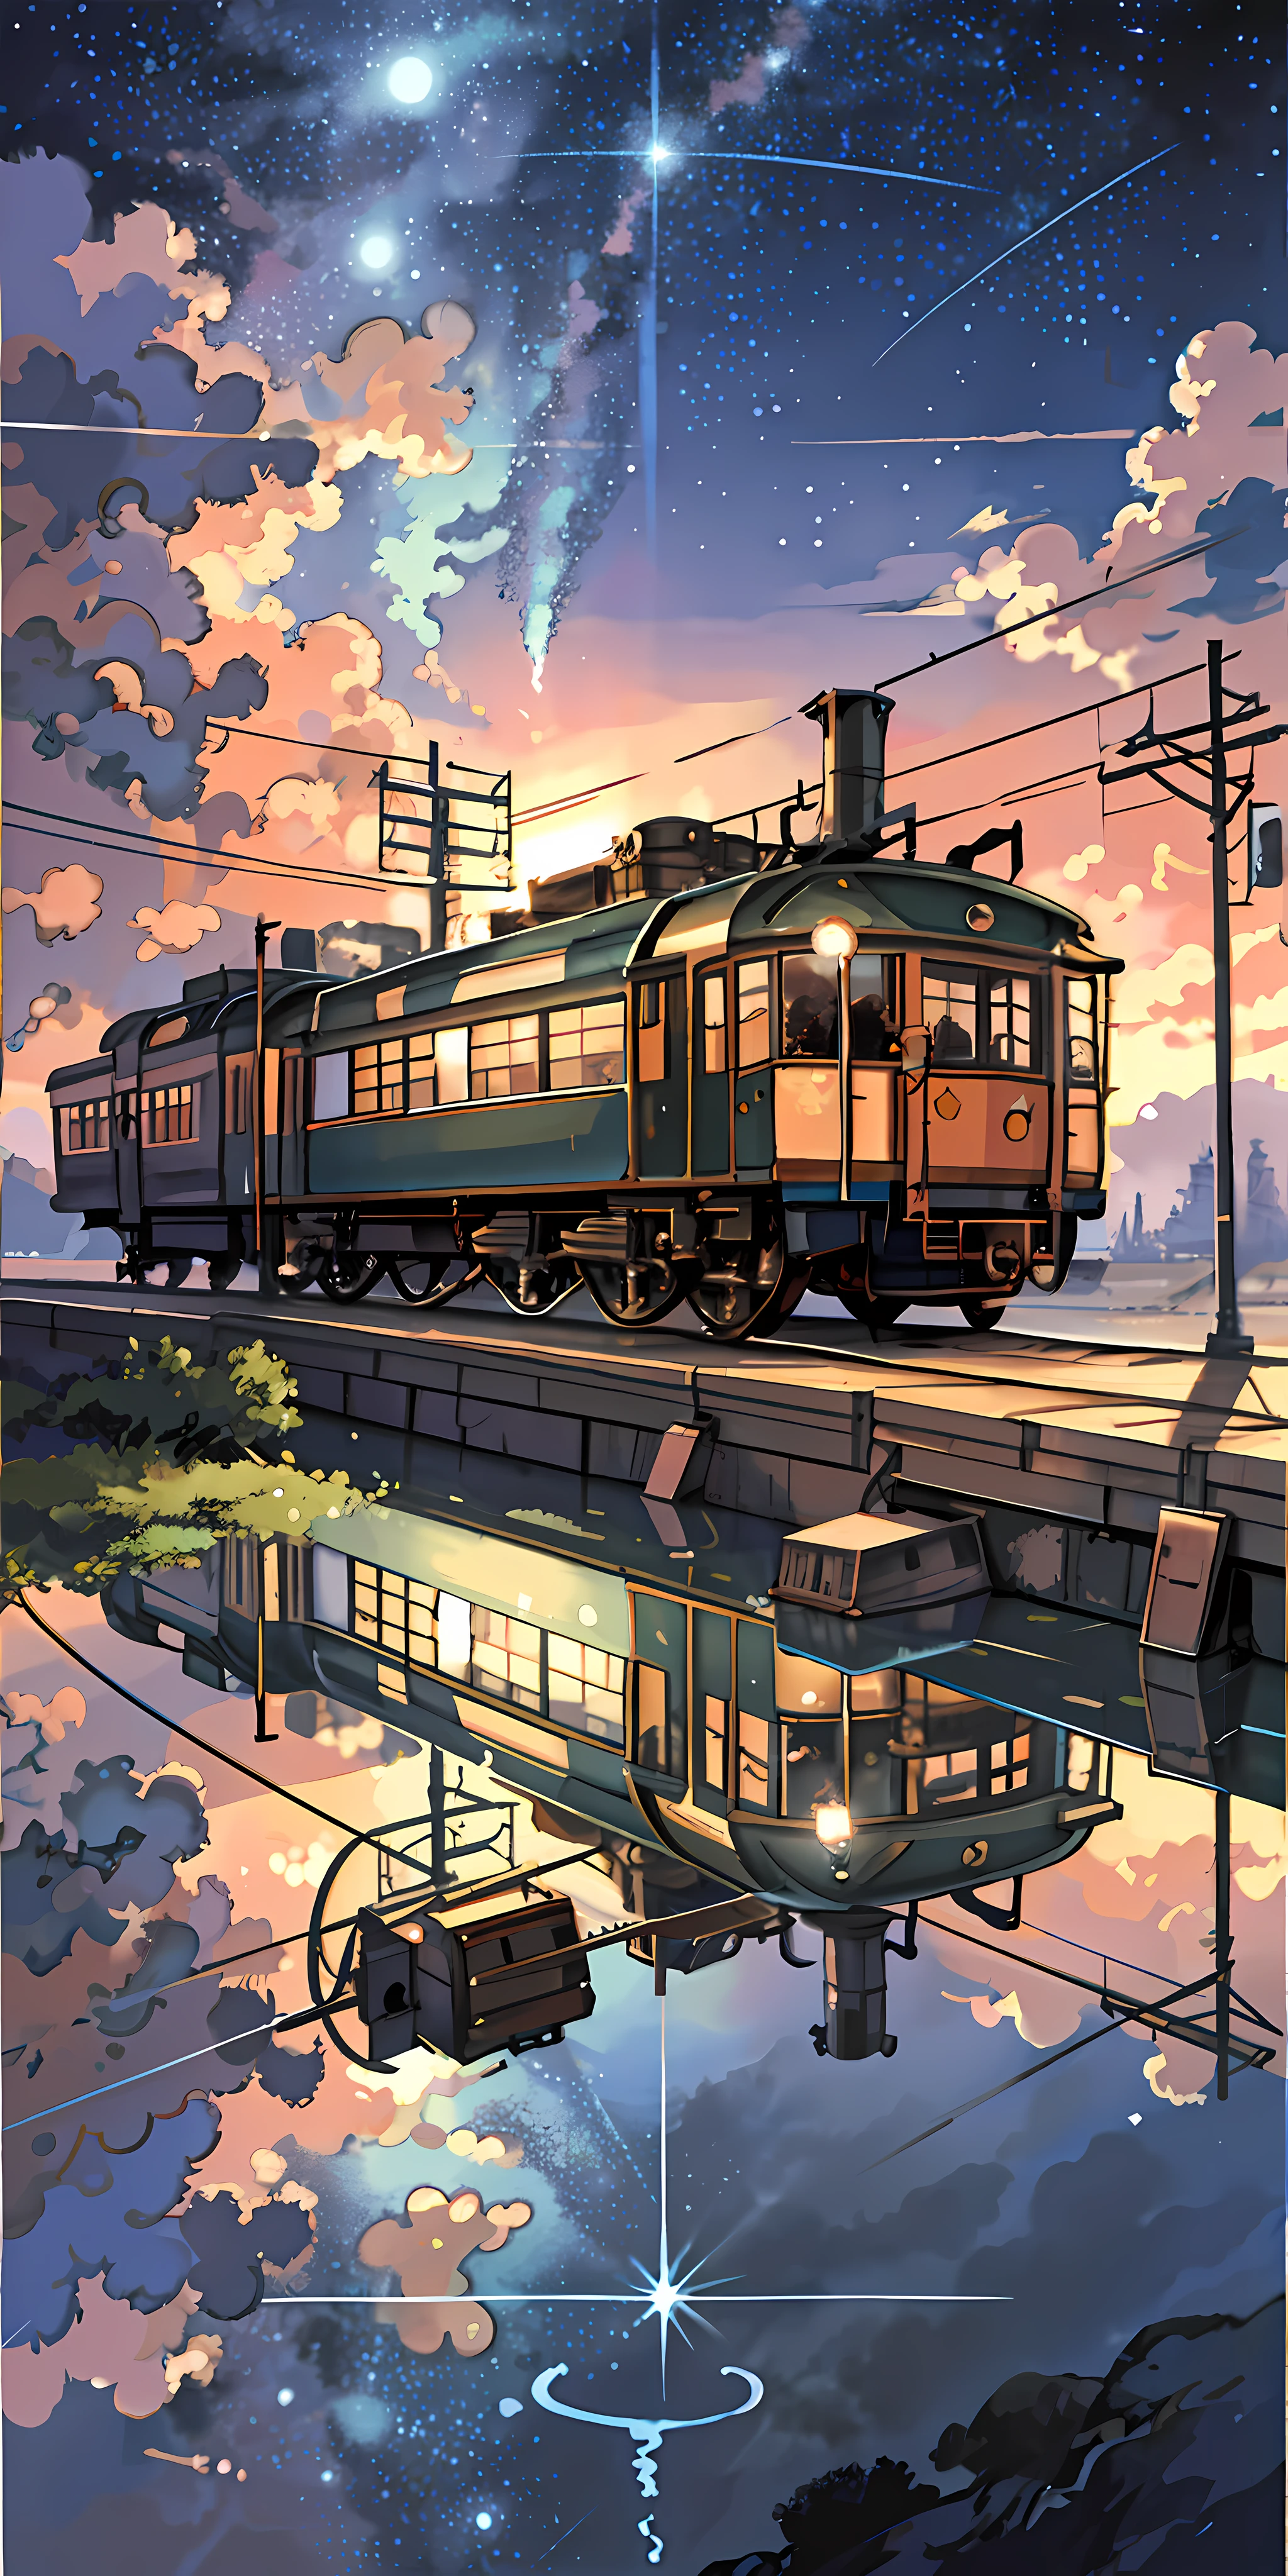 obra-prima de alta qualidade, paisagem, trem de anime passando por corpos d’água nos trilhos, céu estrelado brilhante. Trem romântico, pixiv, arte conceitual, Estilo Lofi style, reflexão. por Makoto Shinkai, Estilo Lofi, Linda cena de anime, Anime paisagem, cenário detalhado - largura 672, in estilo de Makoto Shinkai, estilo de Makoto Shinkai, detalhes aprimorados.